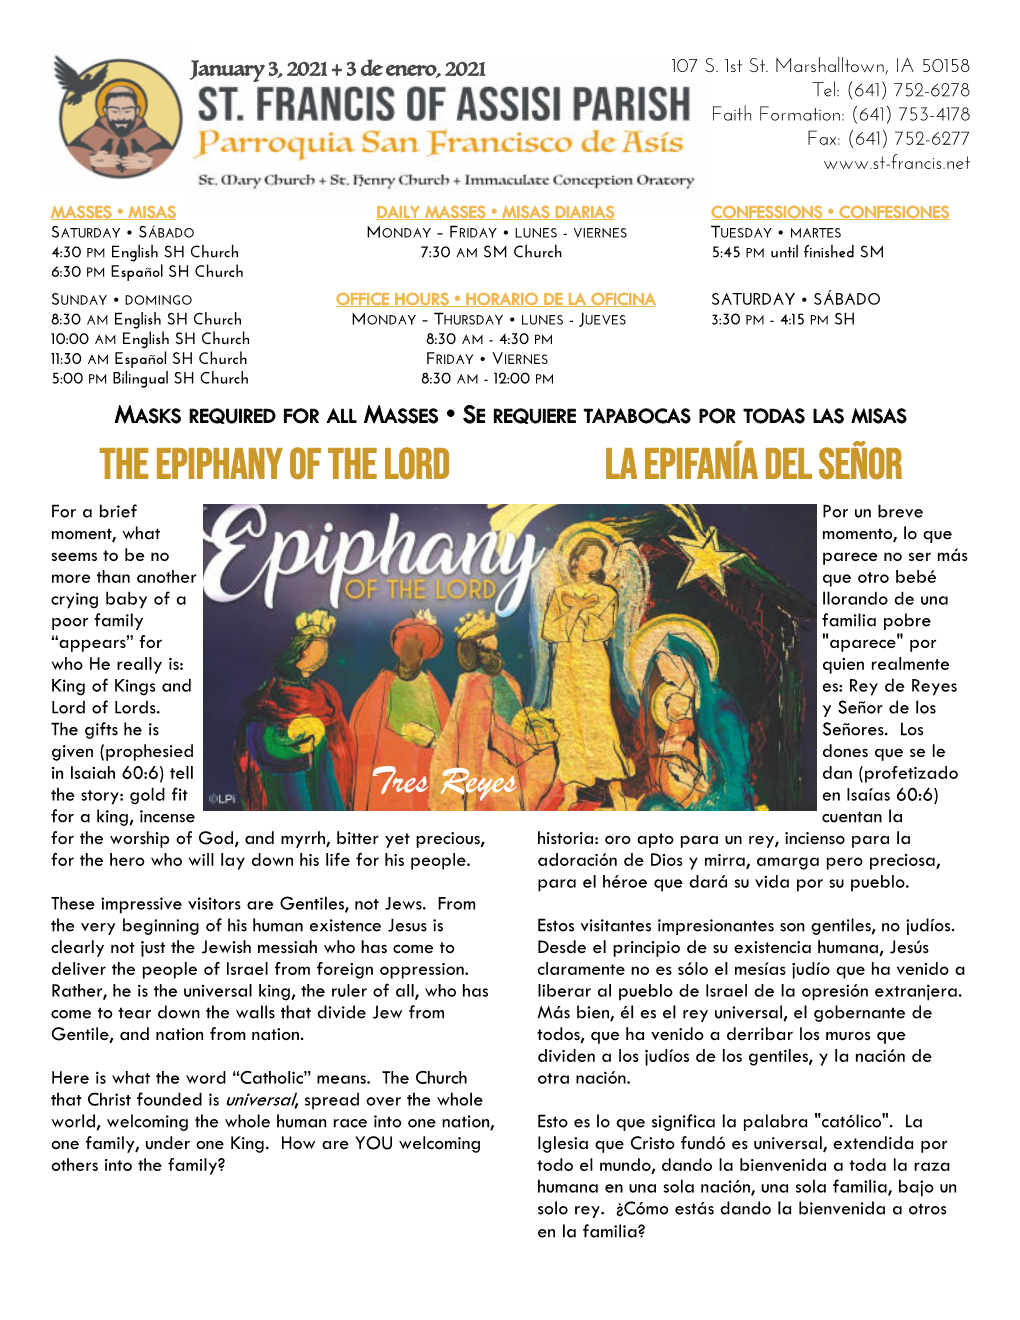 The Epiphany of the Lord La Epifanía Del Señor